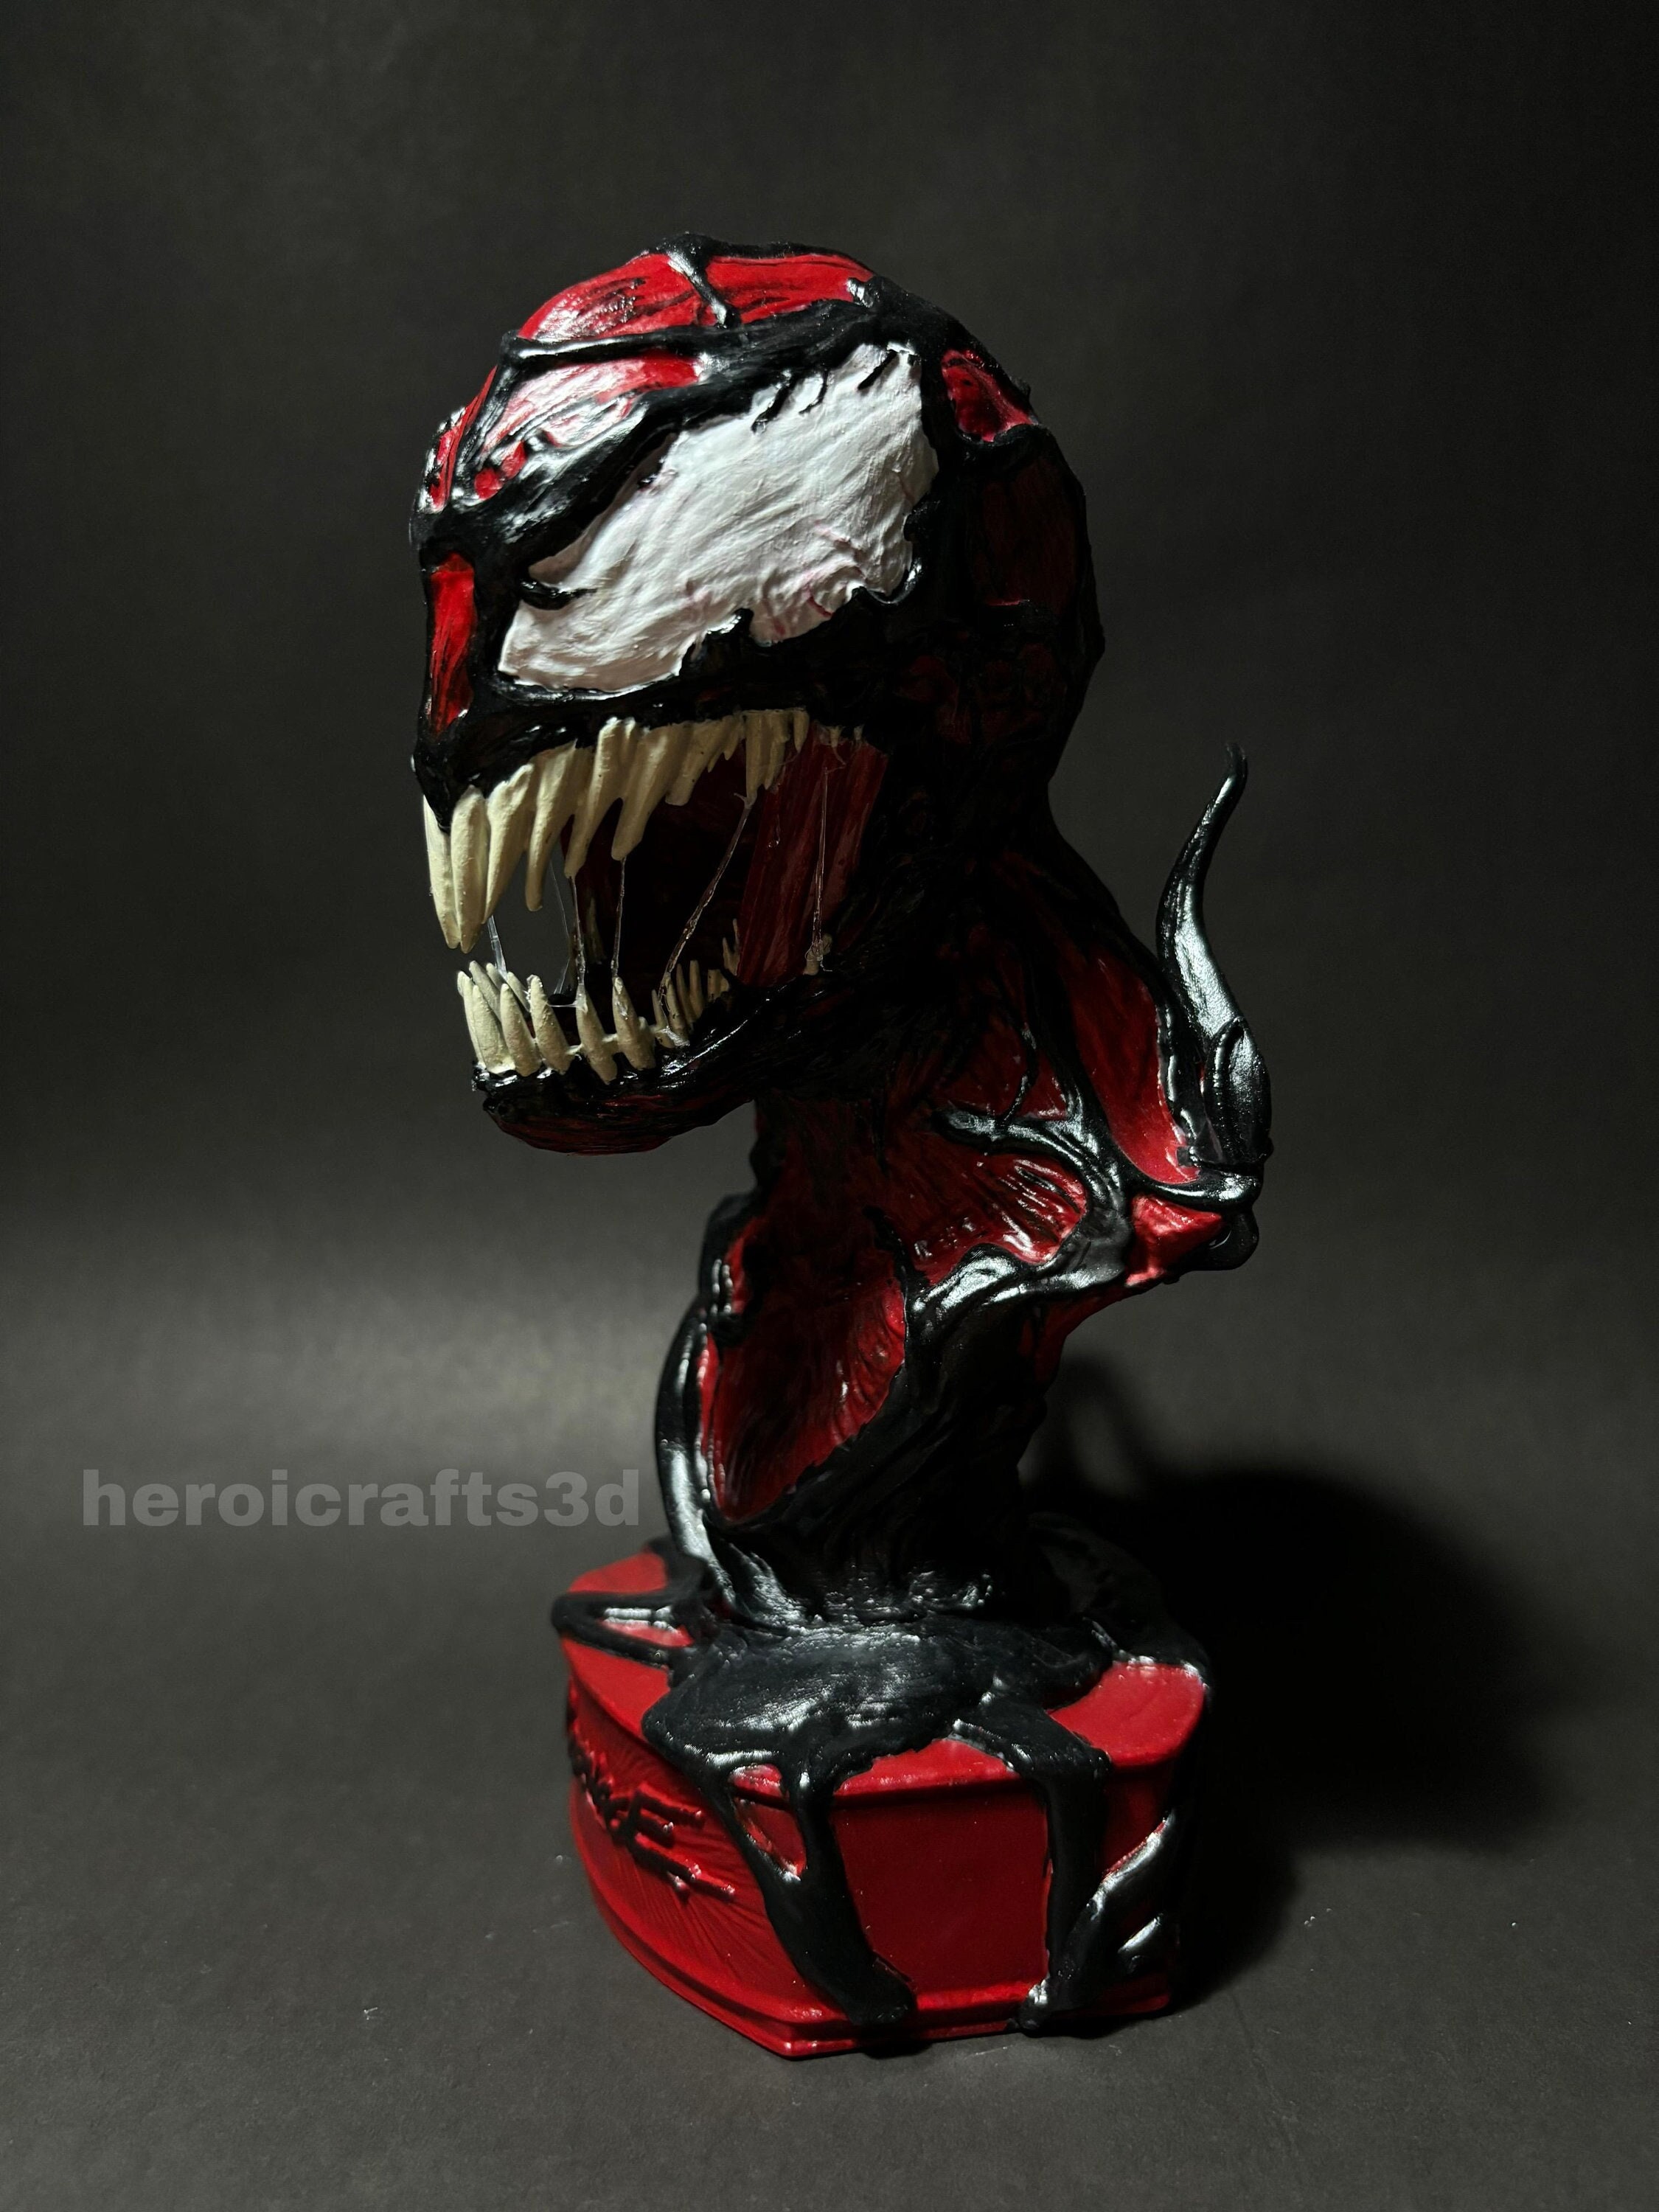 Précommande de figurines Venom en édition limitée -  Canada